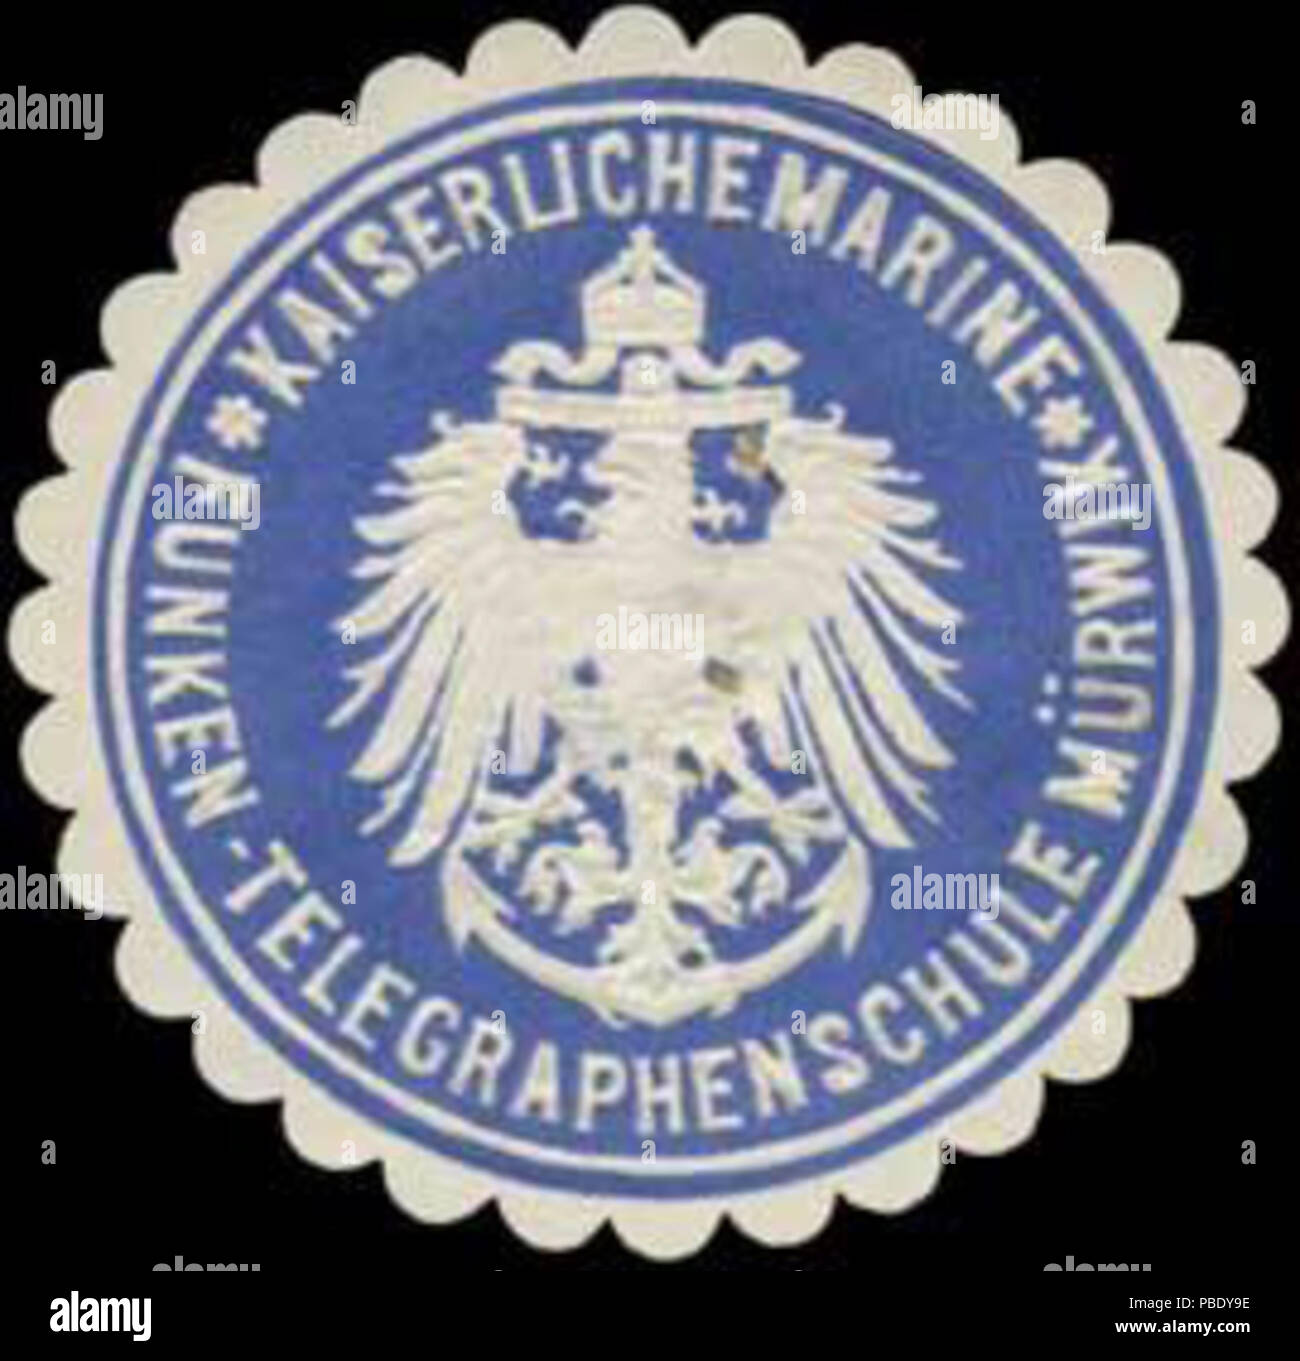 Alte Briefverschlussmarke aus Papier, welche seit ca. 1850 von Behoerden, Anwaelten, Notaren und Firmen zum verschliessen der Post verwendet wurde. 1356 Siegelmarke Funken-Telegraphenschule Mürwik W0320291 Foto Stock